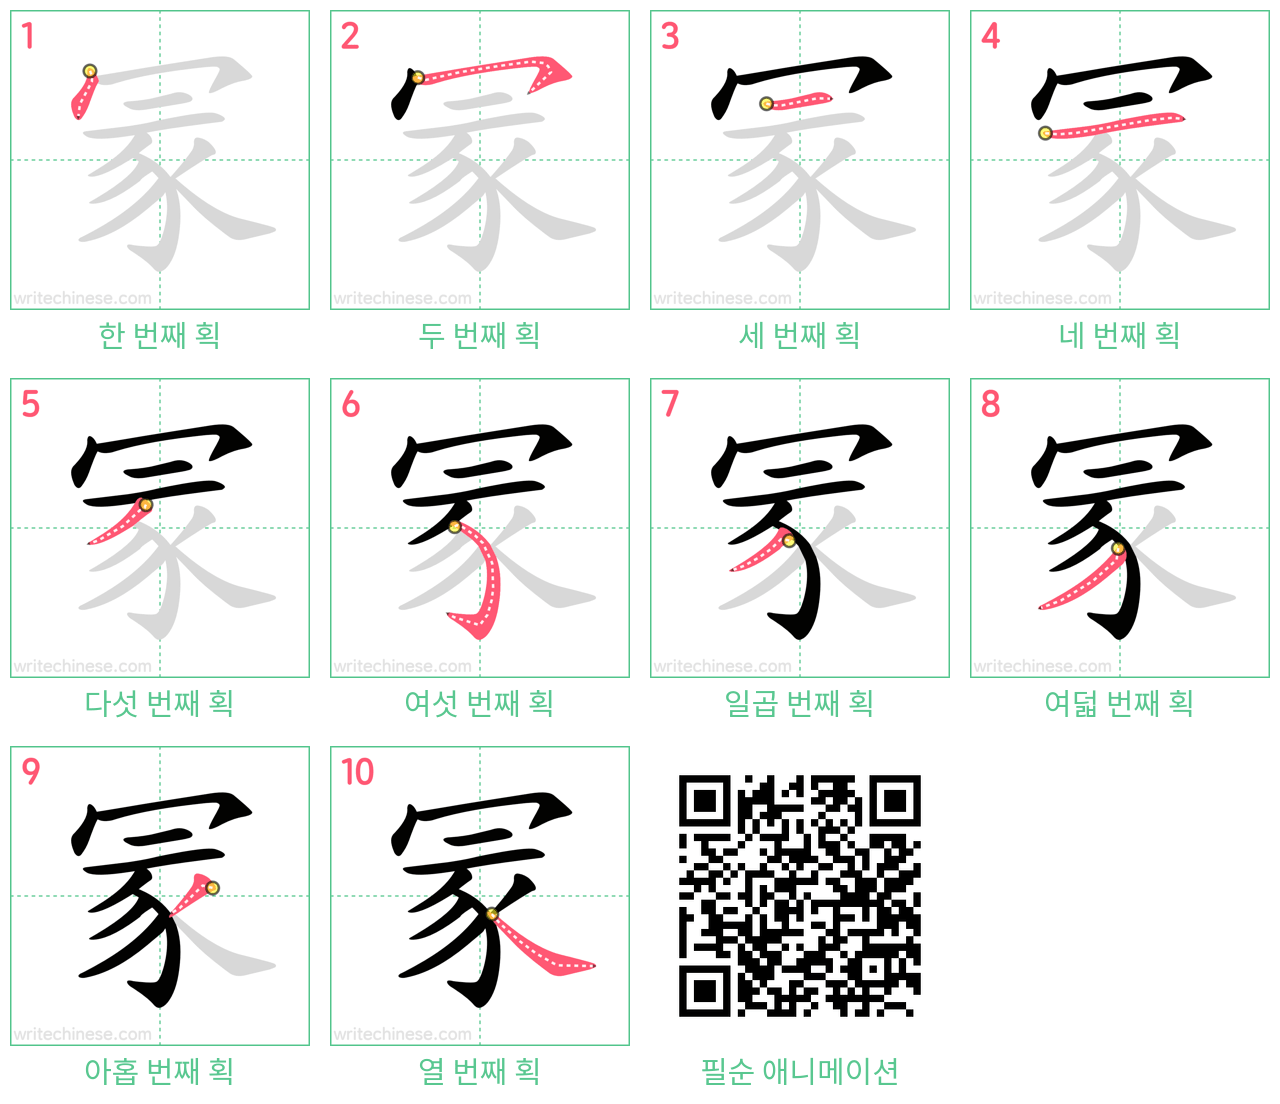 冡 step-by-step stroke order diagrams